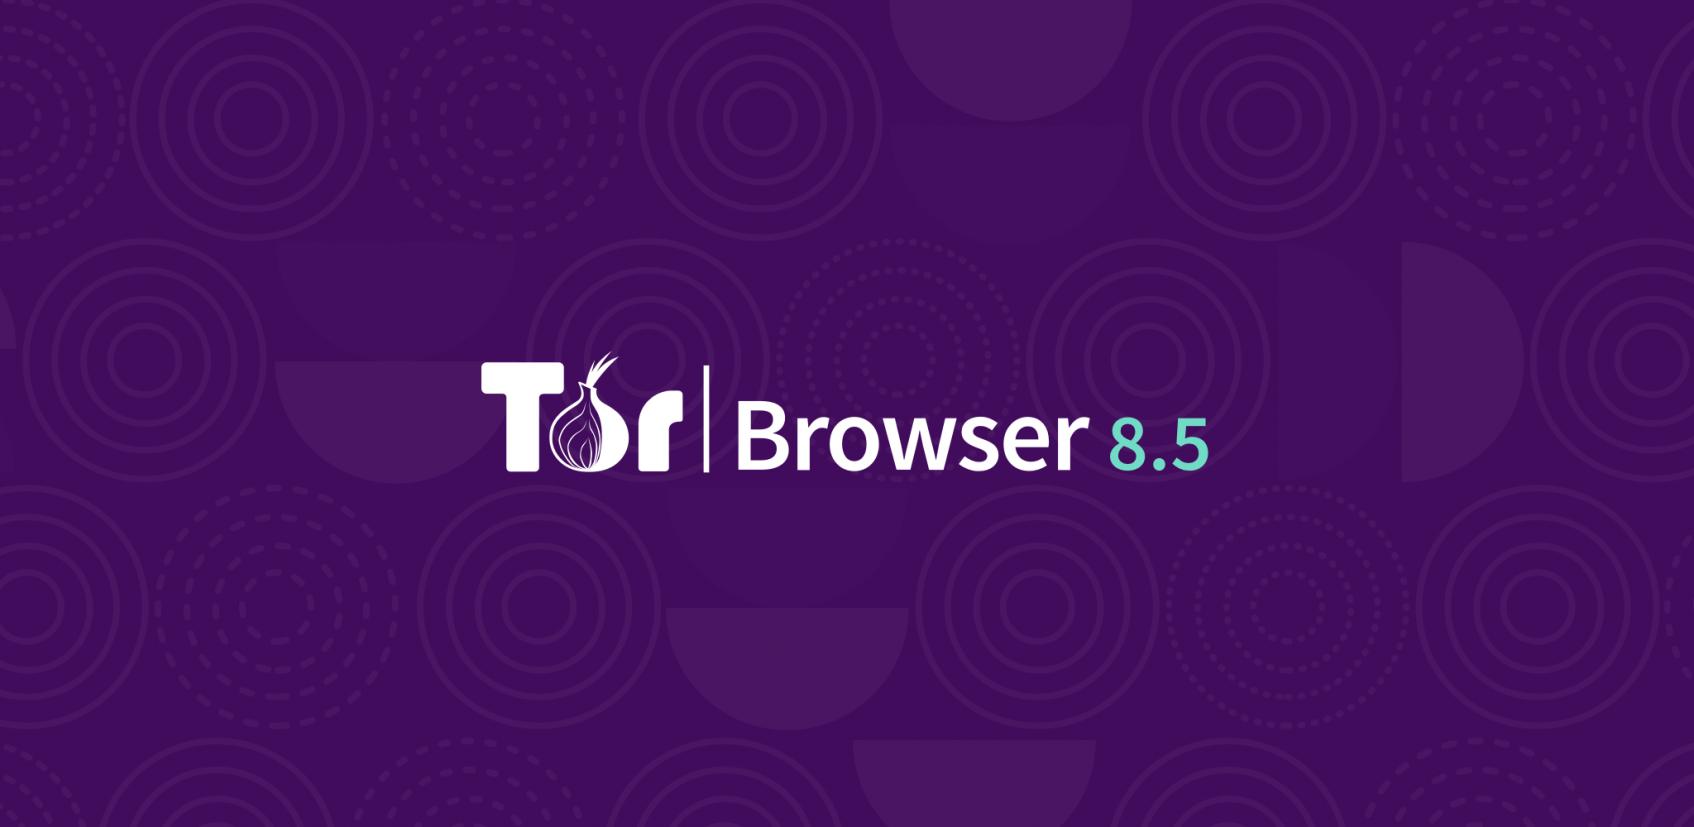 Tor browser это легально hydra2web i2p для tor browser gidra